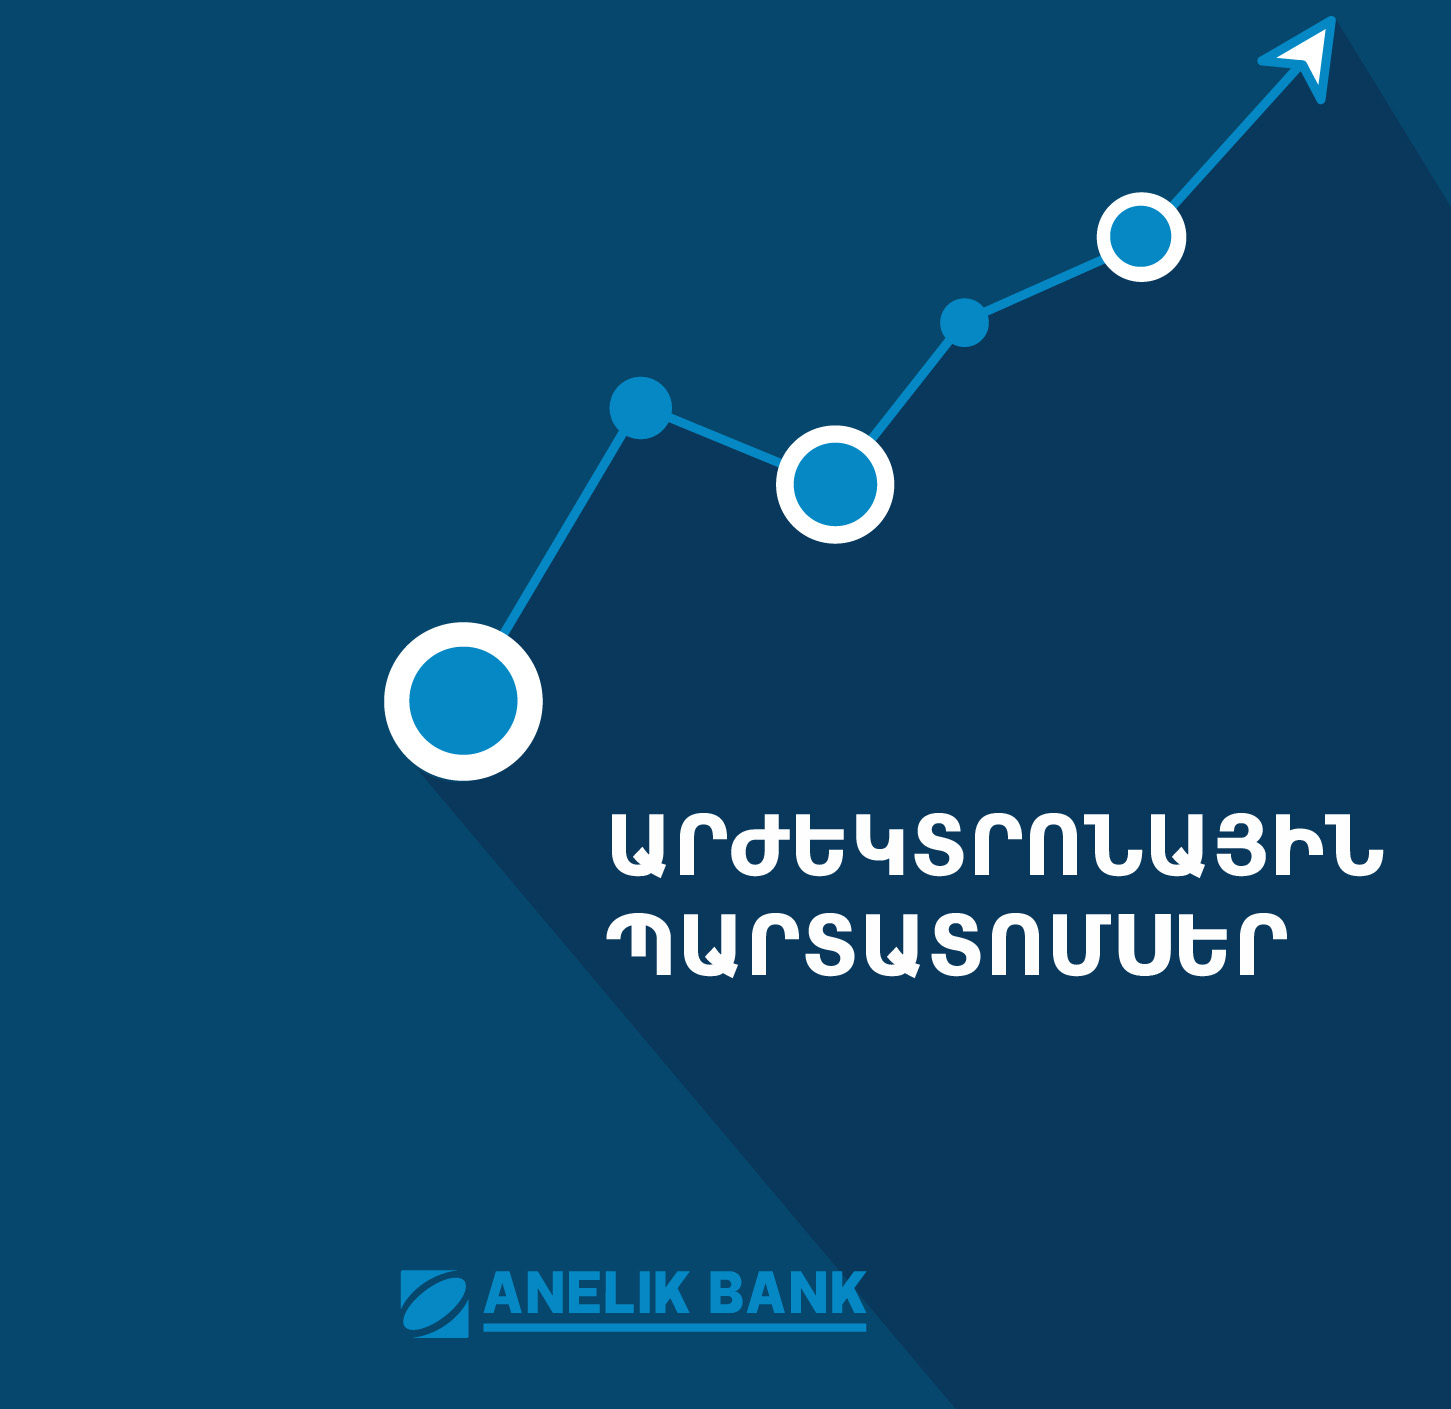 15 марта начнется первичное размещение драмовых облигаций Банка Анелик в объеме 1 млрд драмов